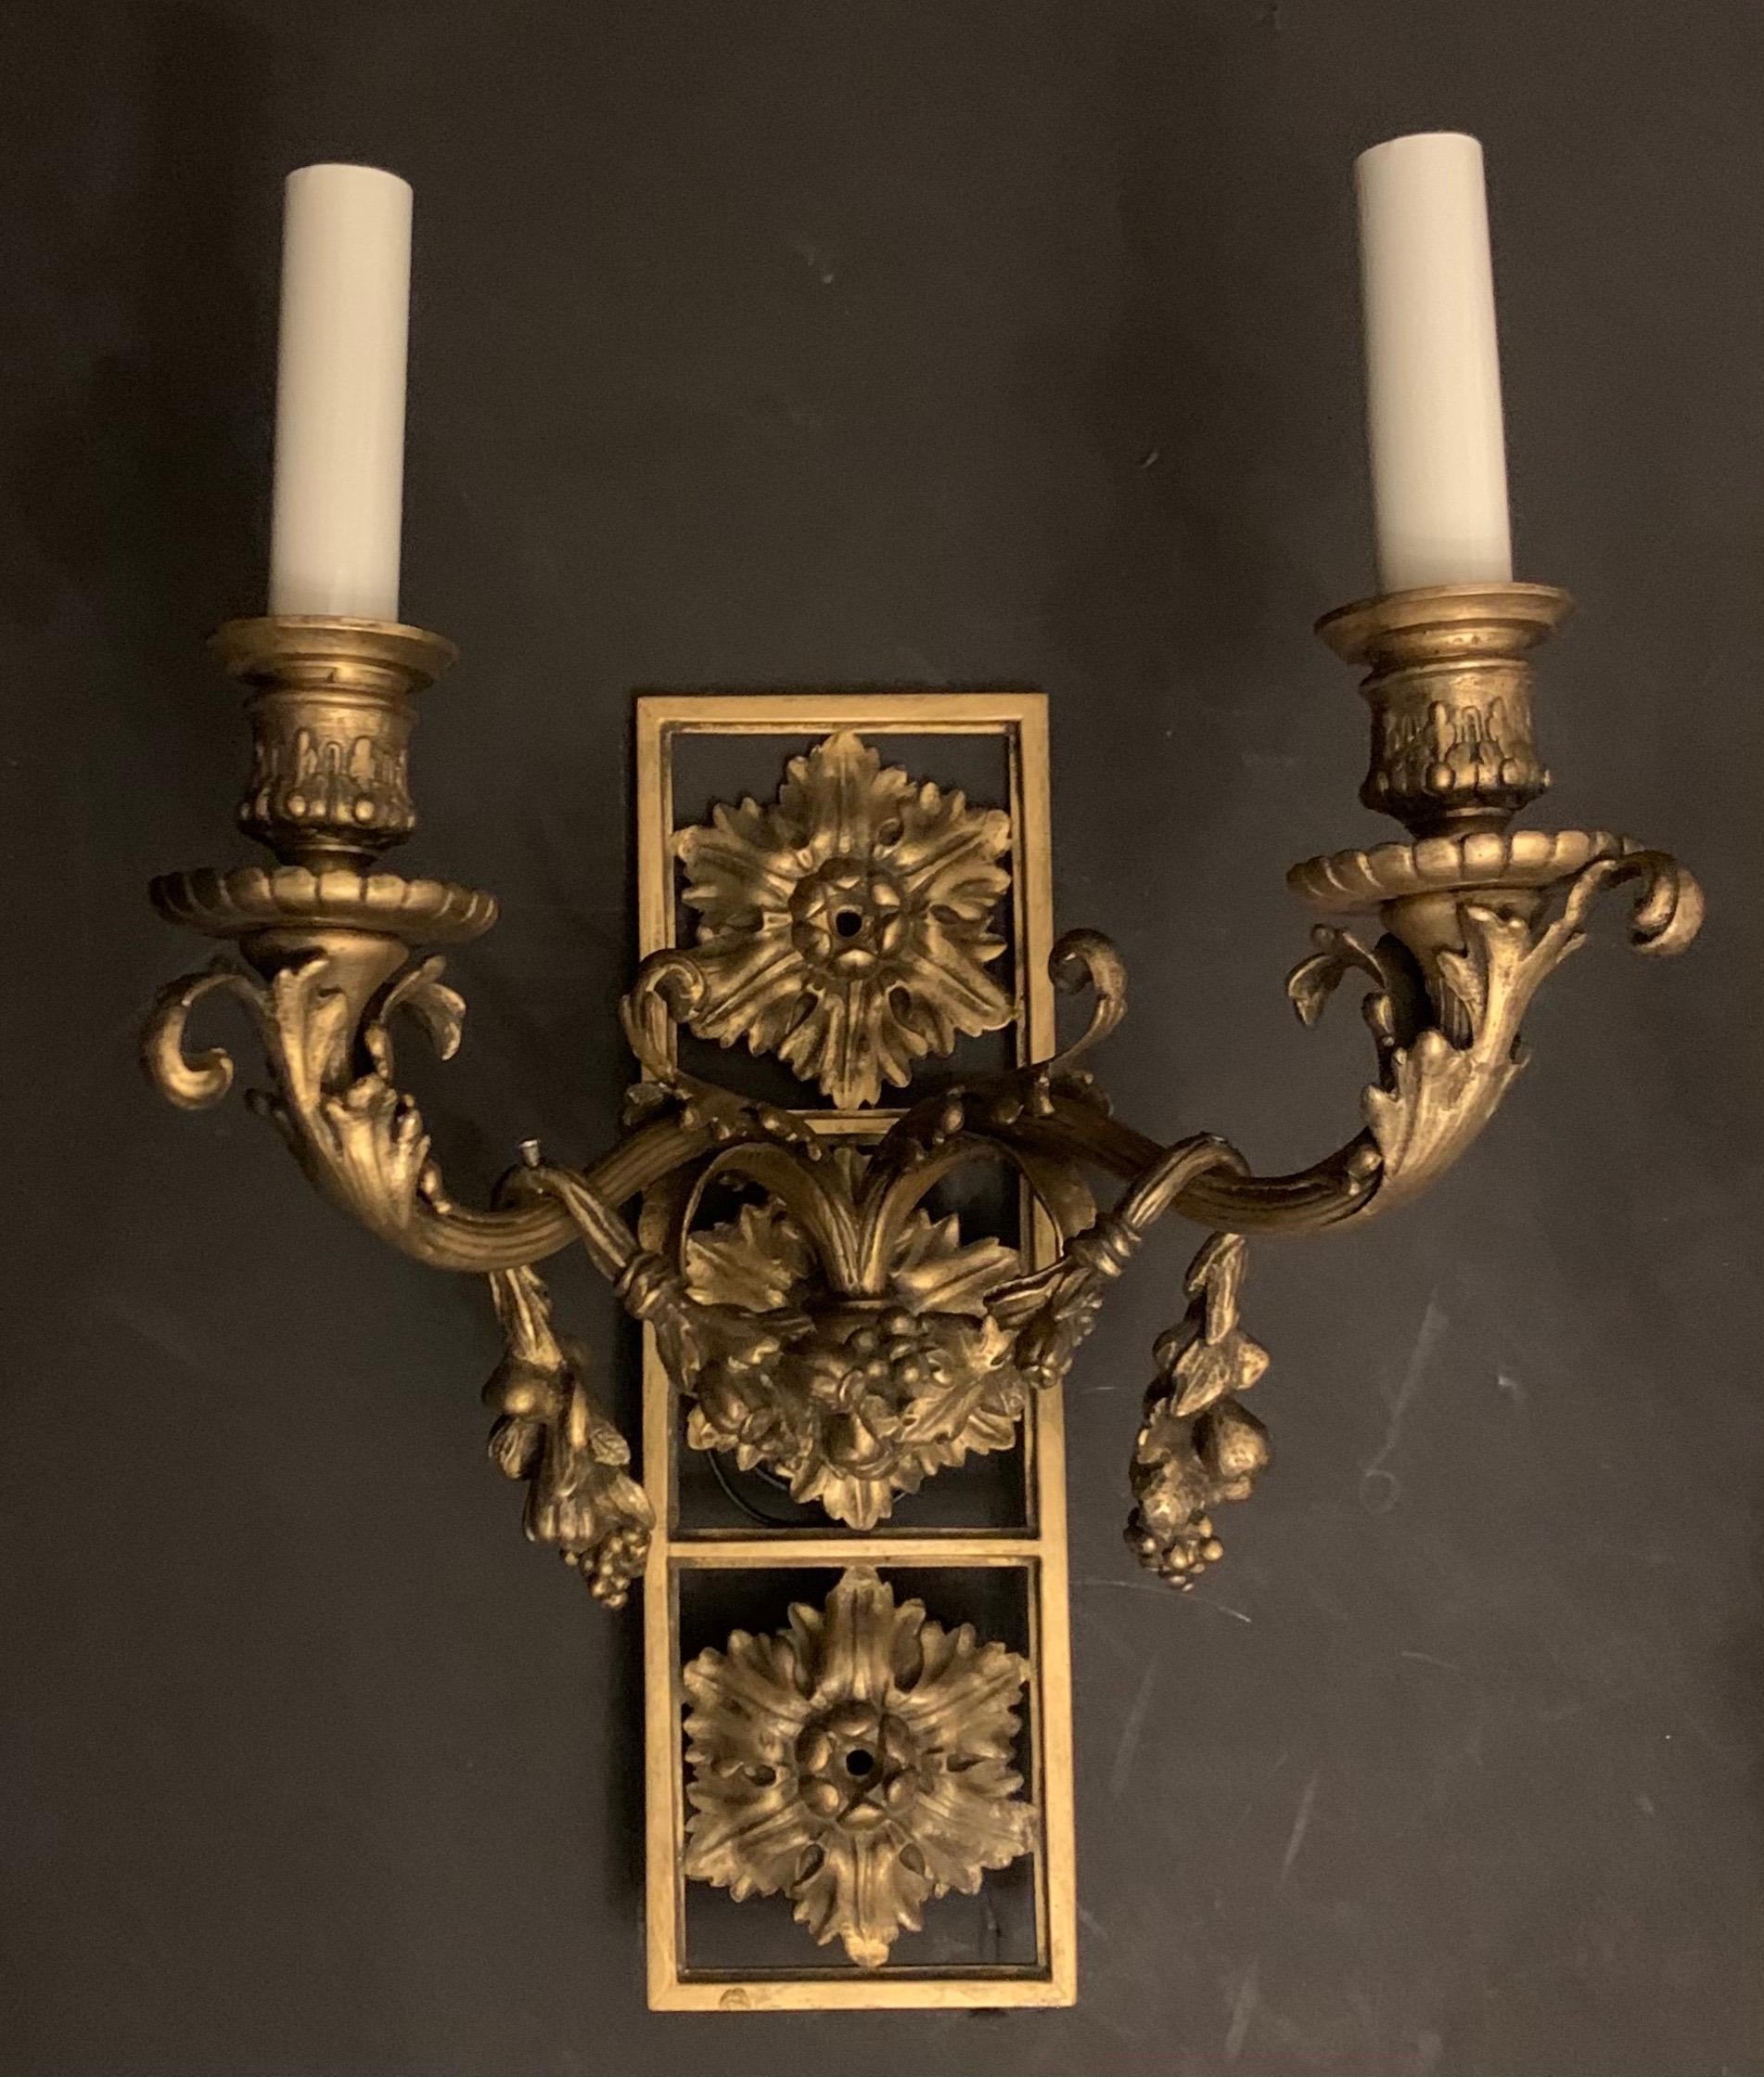 Une merveilleuse paire d'appliques à bras de style néoclassique en bronze de style E. F. Caldwell, avec couronne de fleurs et deux candélabres rebranchés.